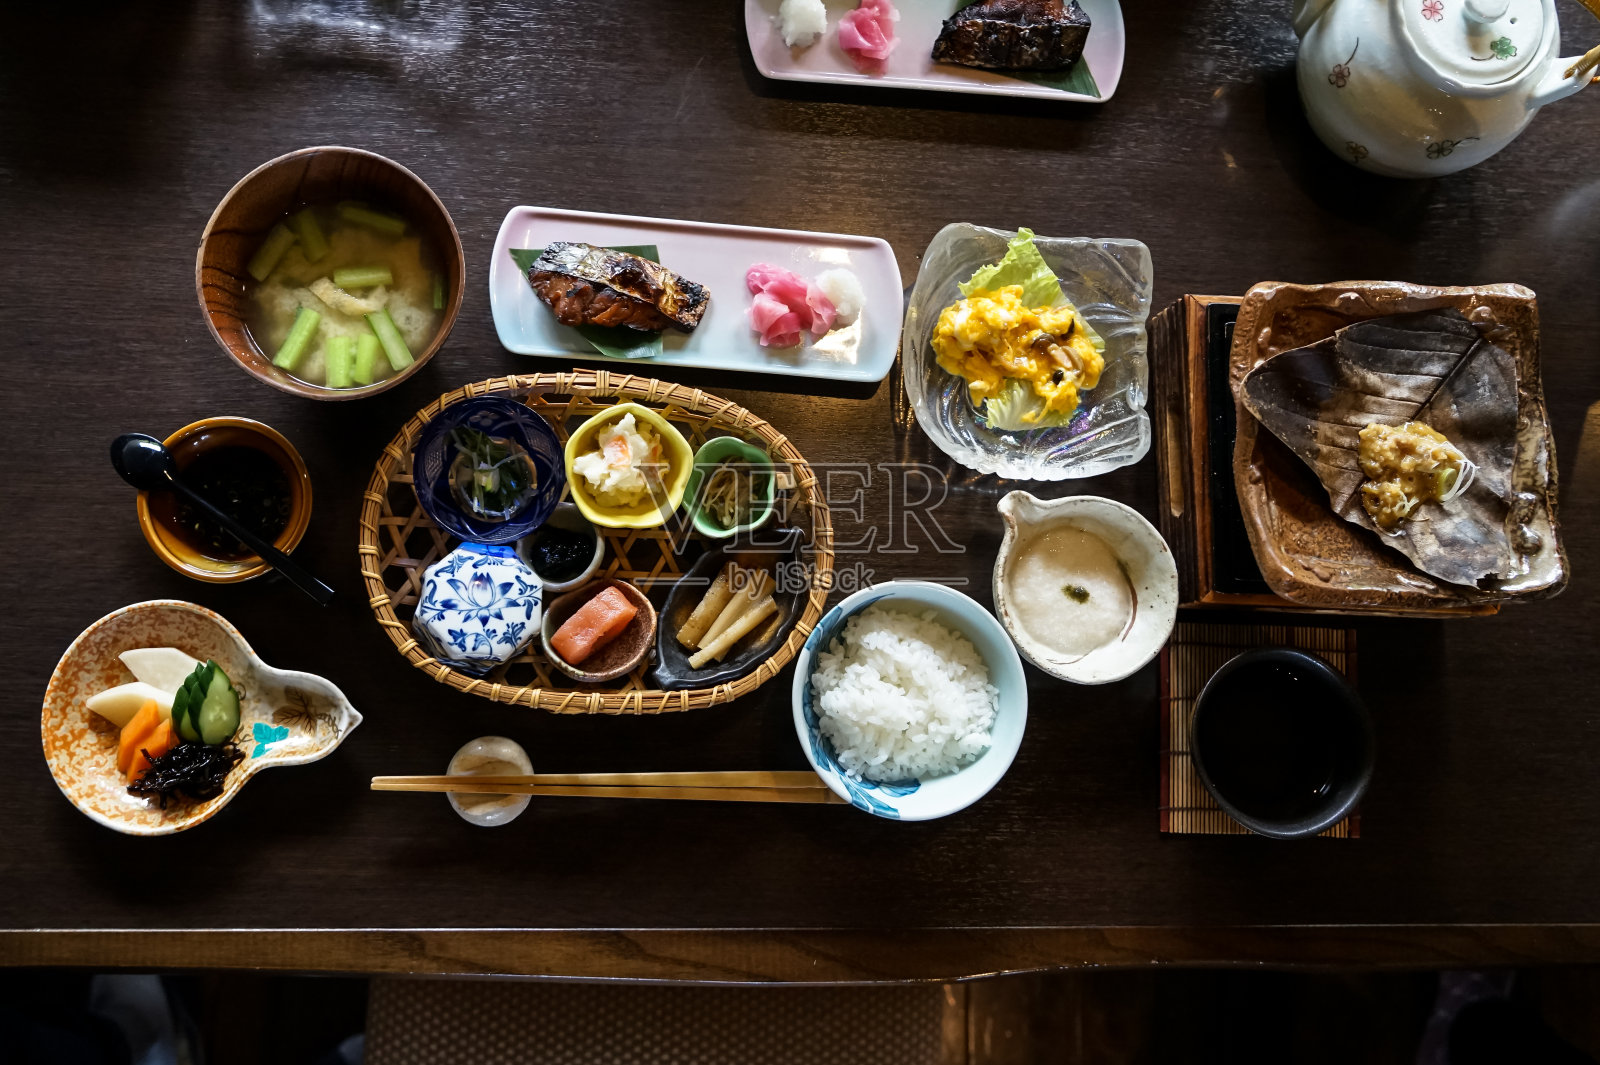 日本日式早餐包括白米饭，烤鱼，煎蛋，汤，门太子，泡菜，海藻，热盘，其他配菜和茶几上的绿茶照片摄影图片